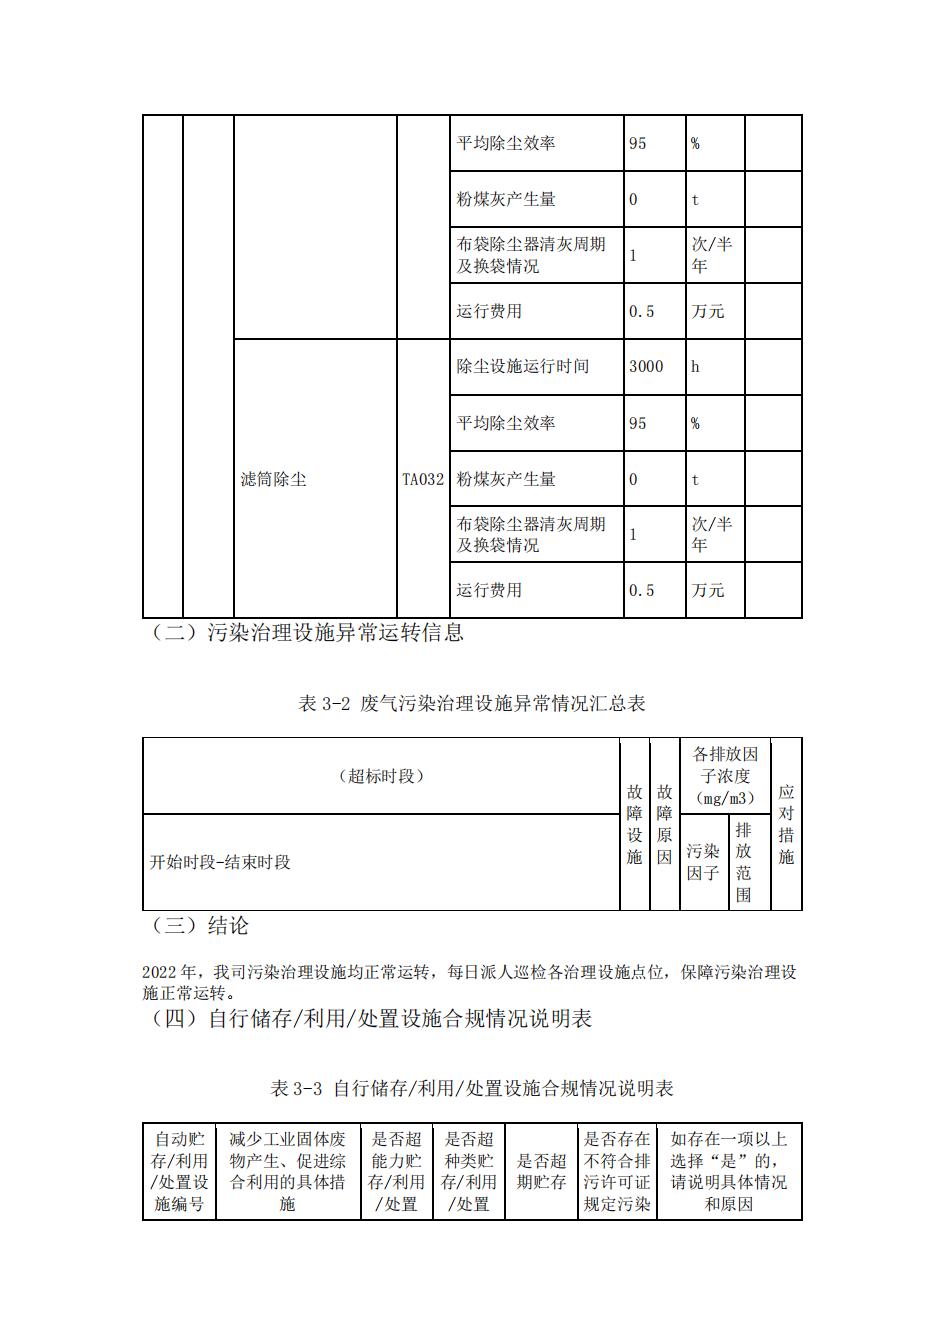 南京j9九游会真人游戏第一品牌2022年环境信息披露_25.jpg